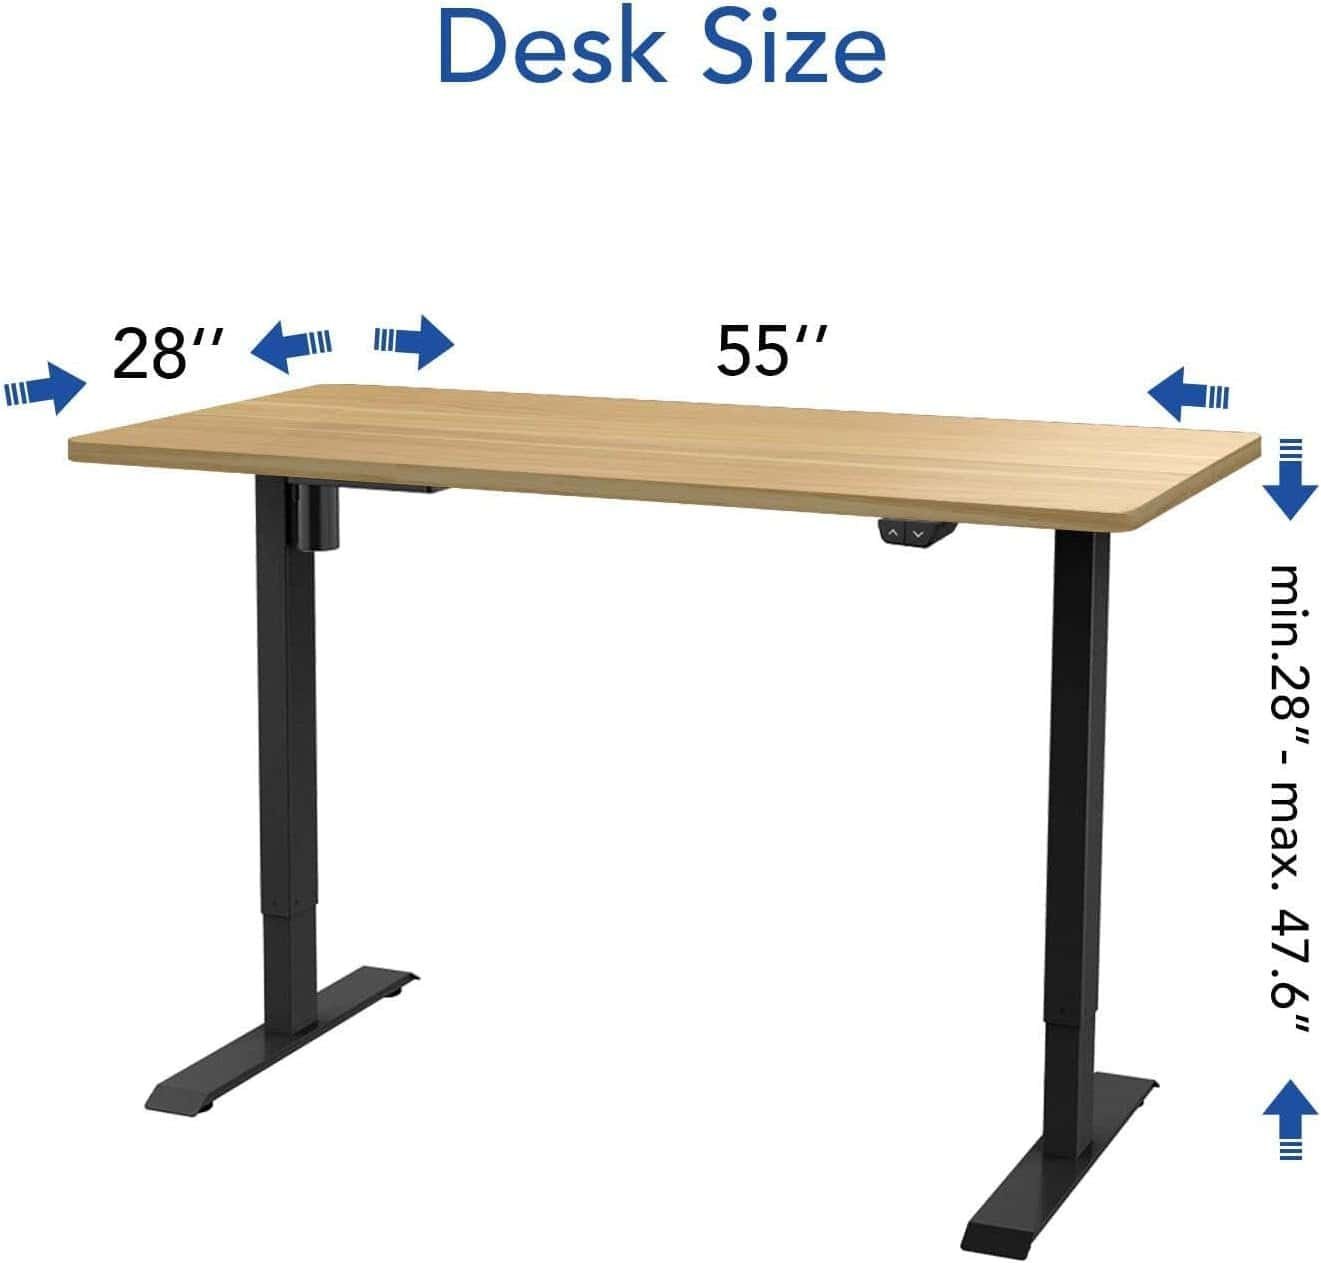 FLEXISPOT Standing Desk Review